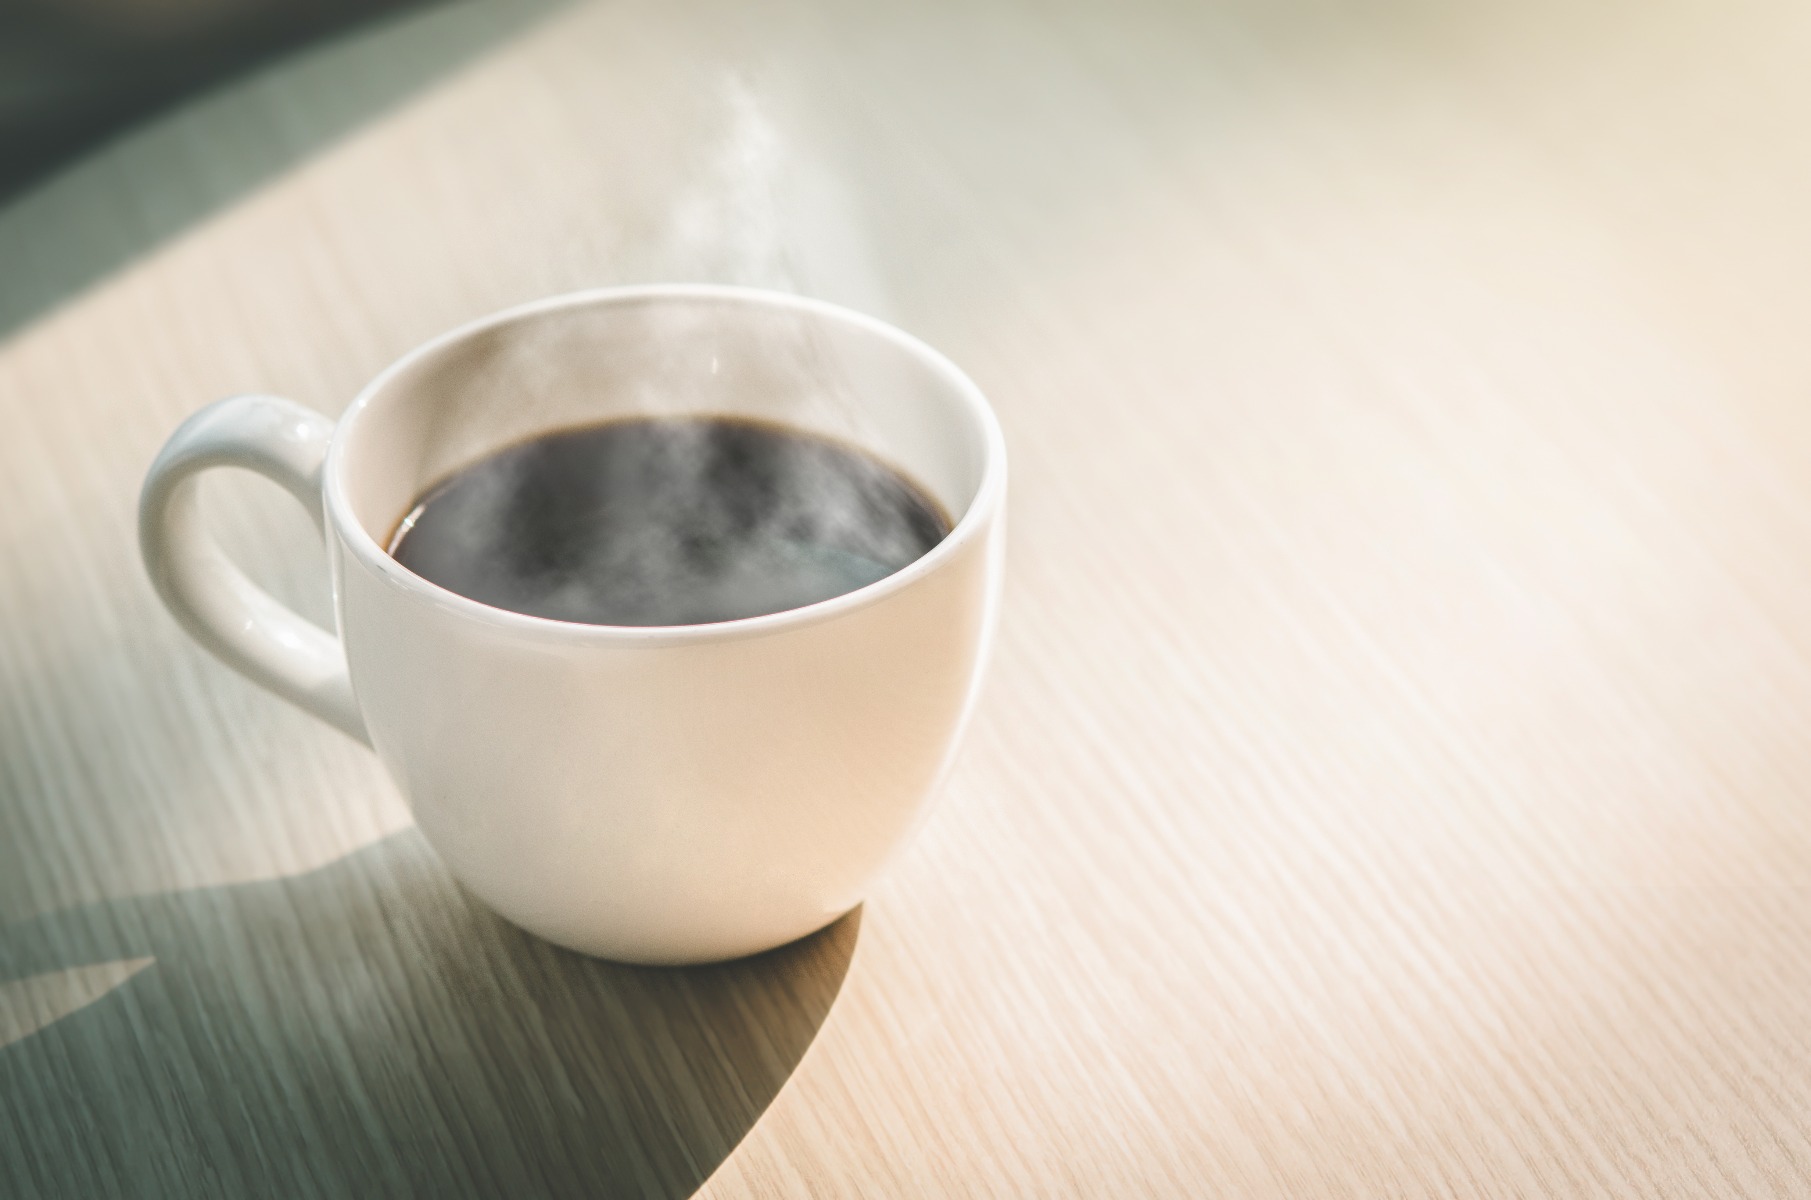 Dieci buoni motivi per bere caffè e vivere meglio, secondo la scienza 